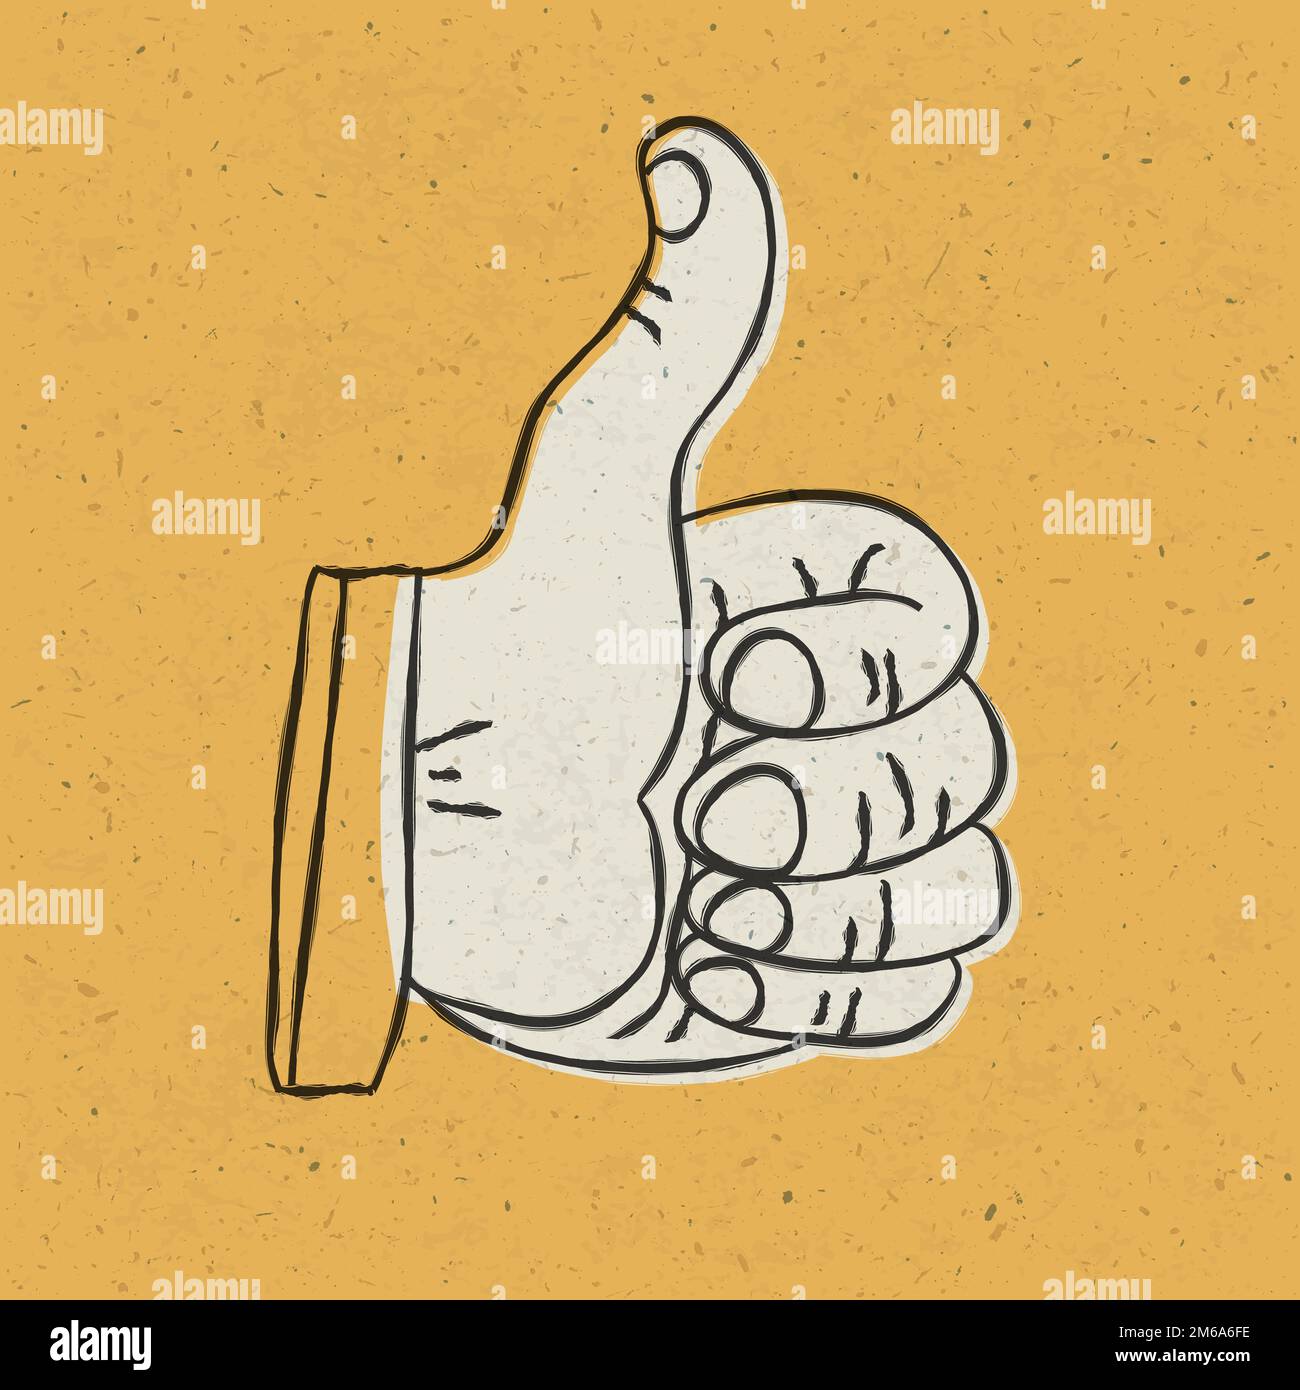 Style rétro thumb up symbole sur fond texturé jaune. Illustration vectorielle, EPS10 Banque D'Images